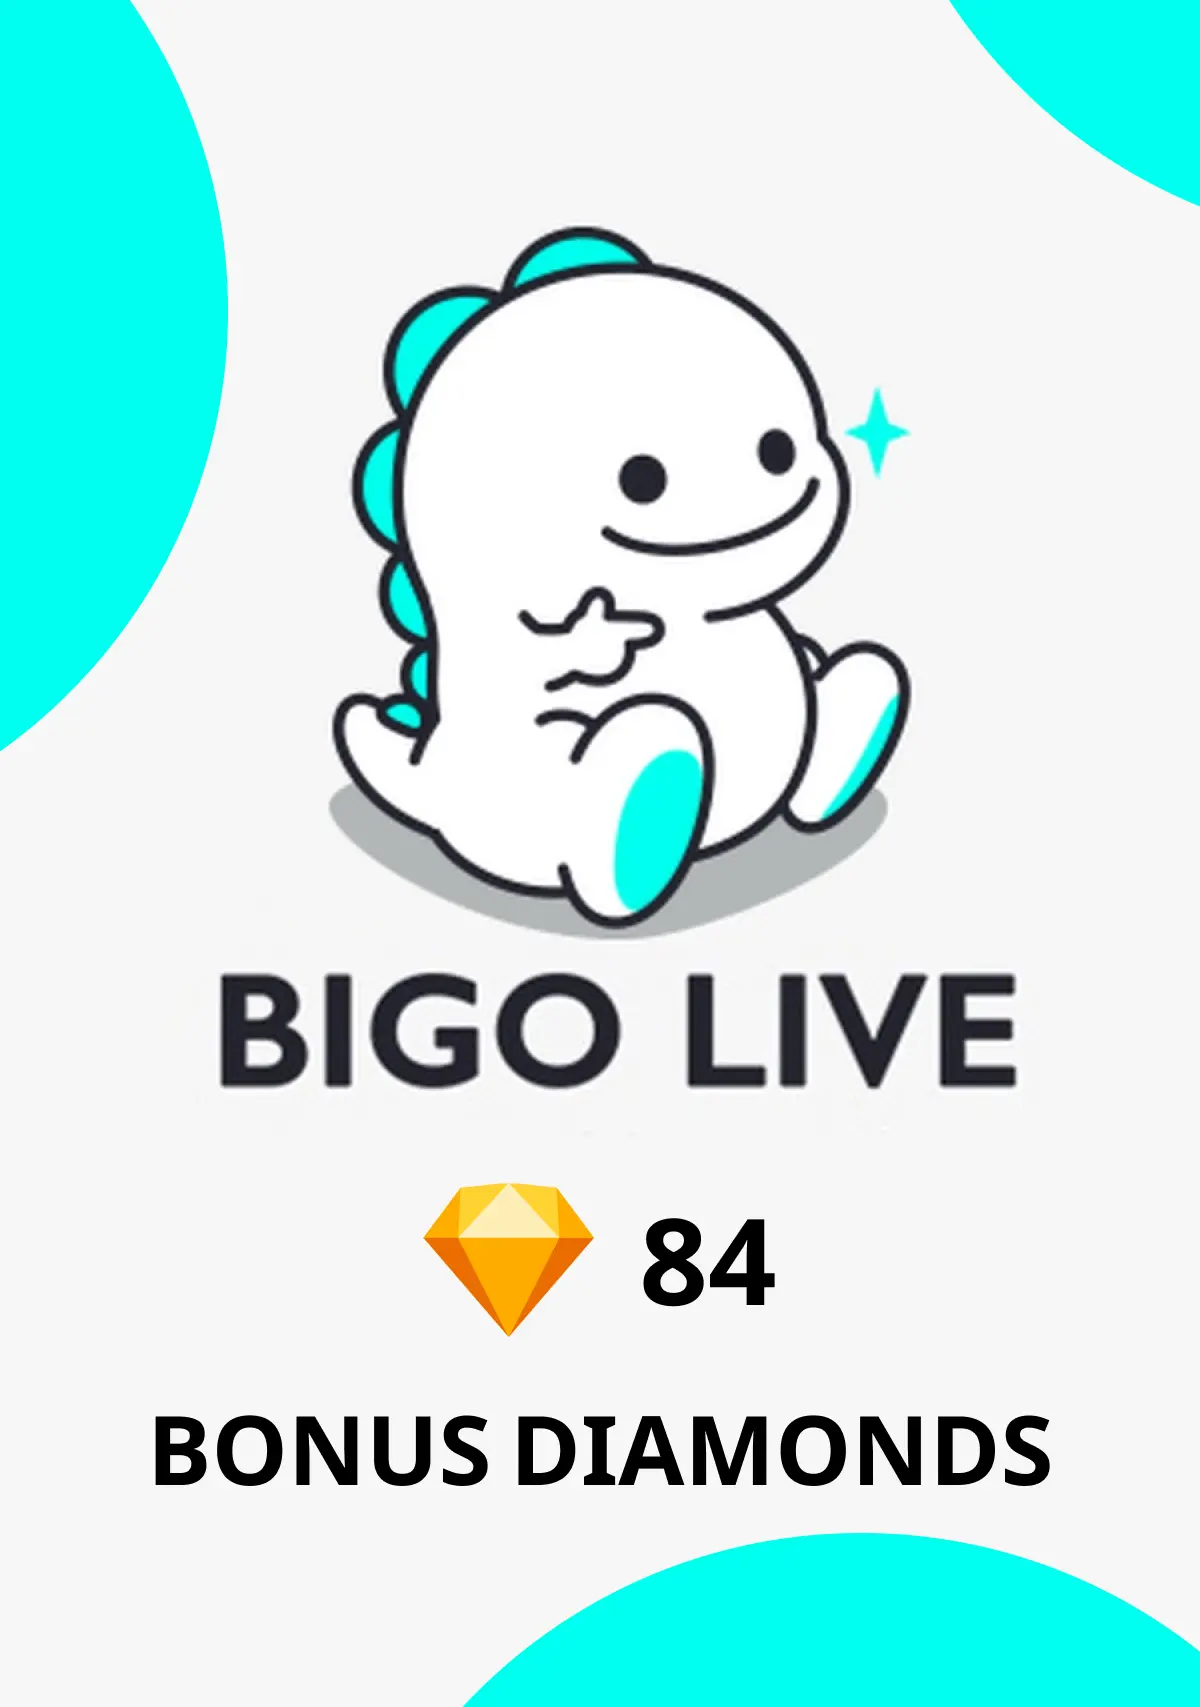 Bigo Live - 84 Bonus Diamonds - Digital Code